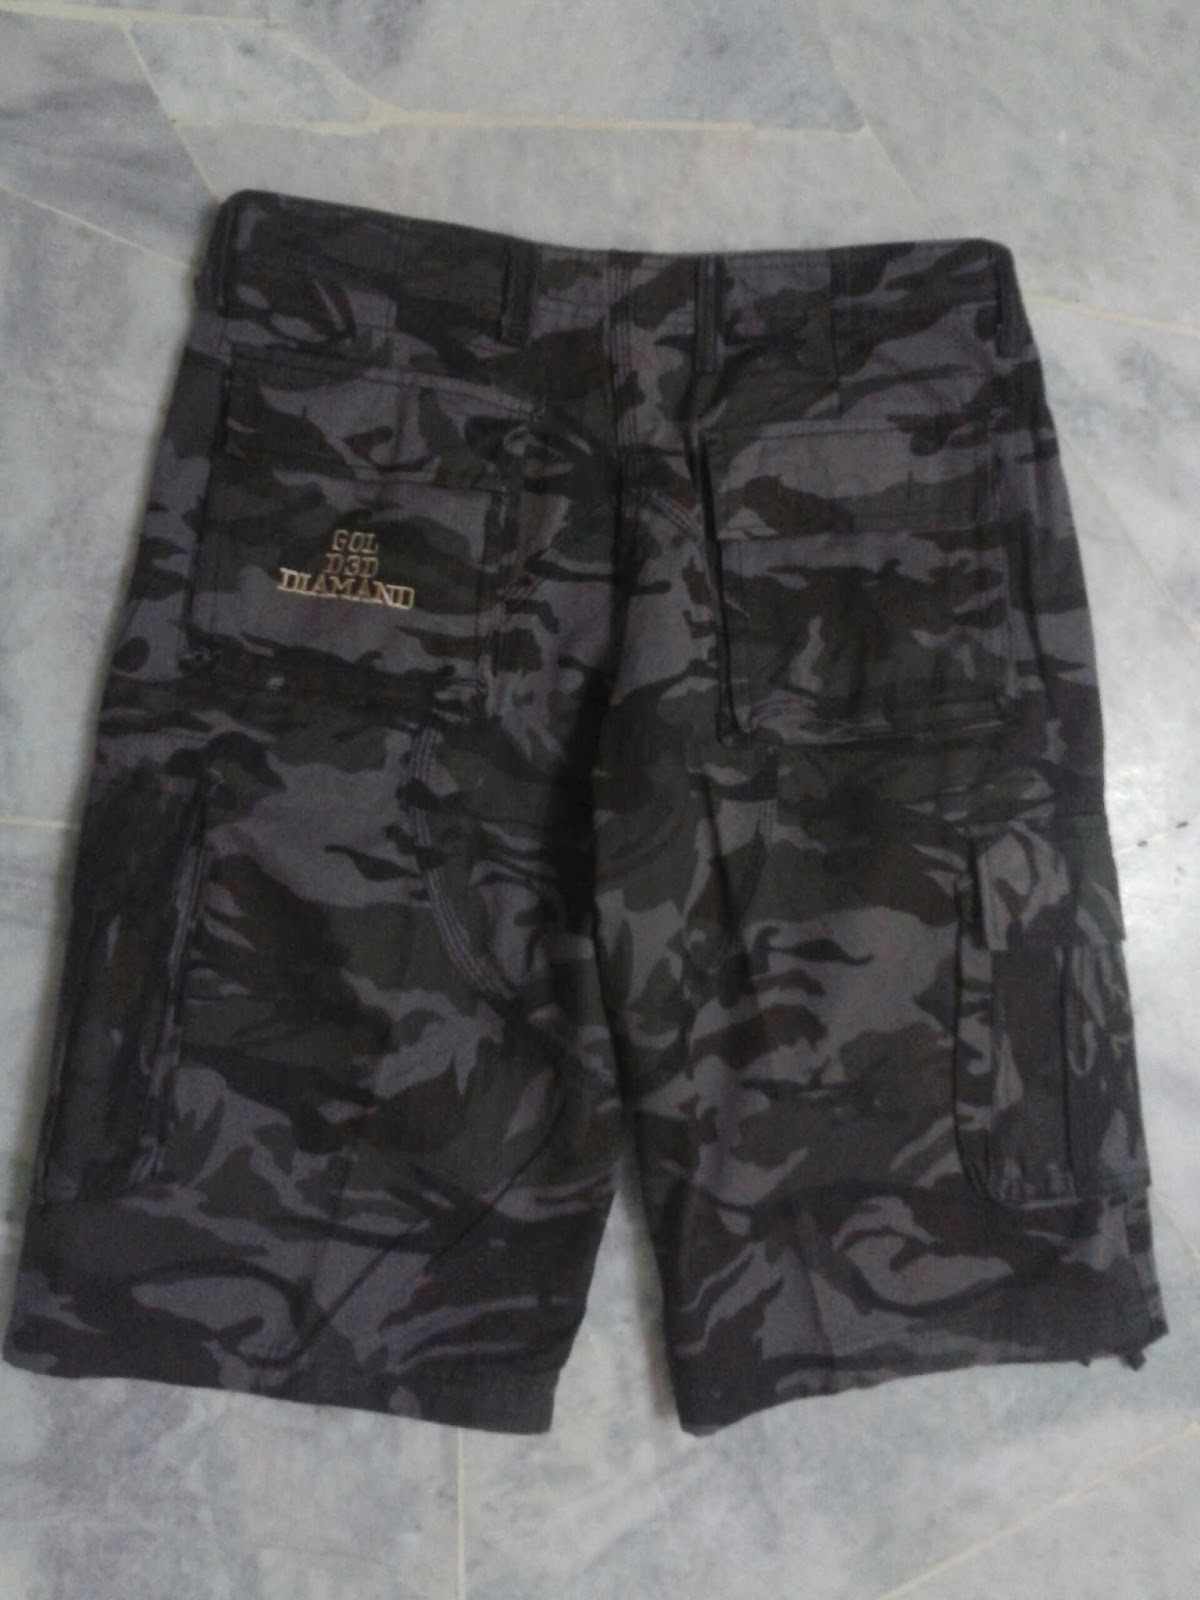 Xtreme Sport Pro Shop: Tactical Short Pants Camo - Size 36 (SP361)